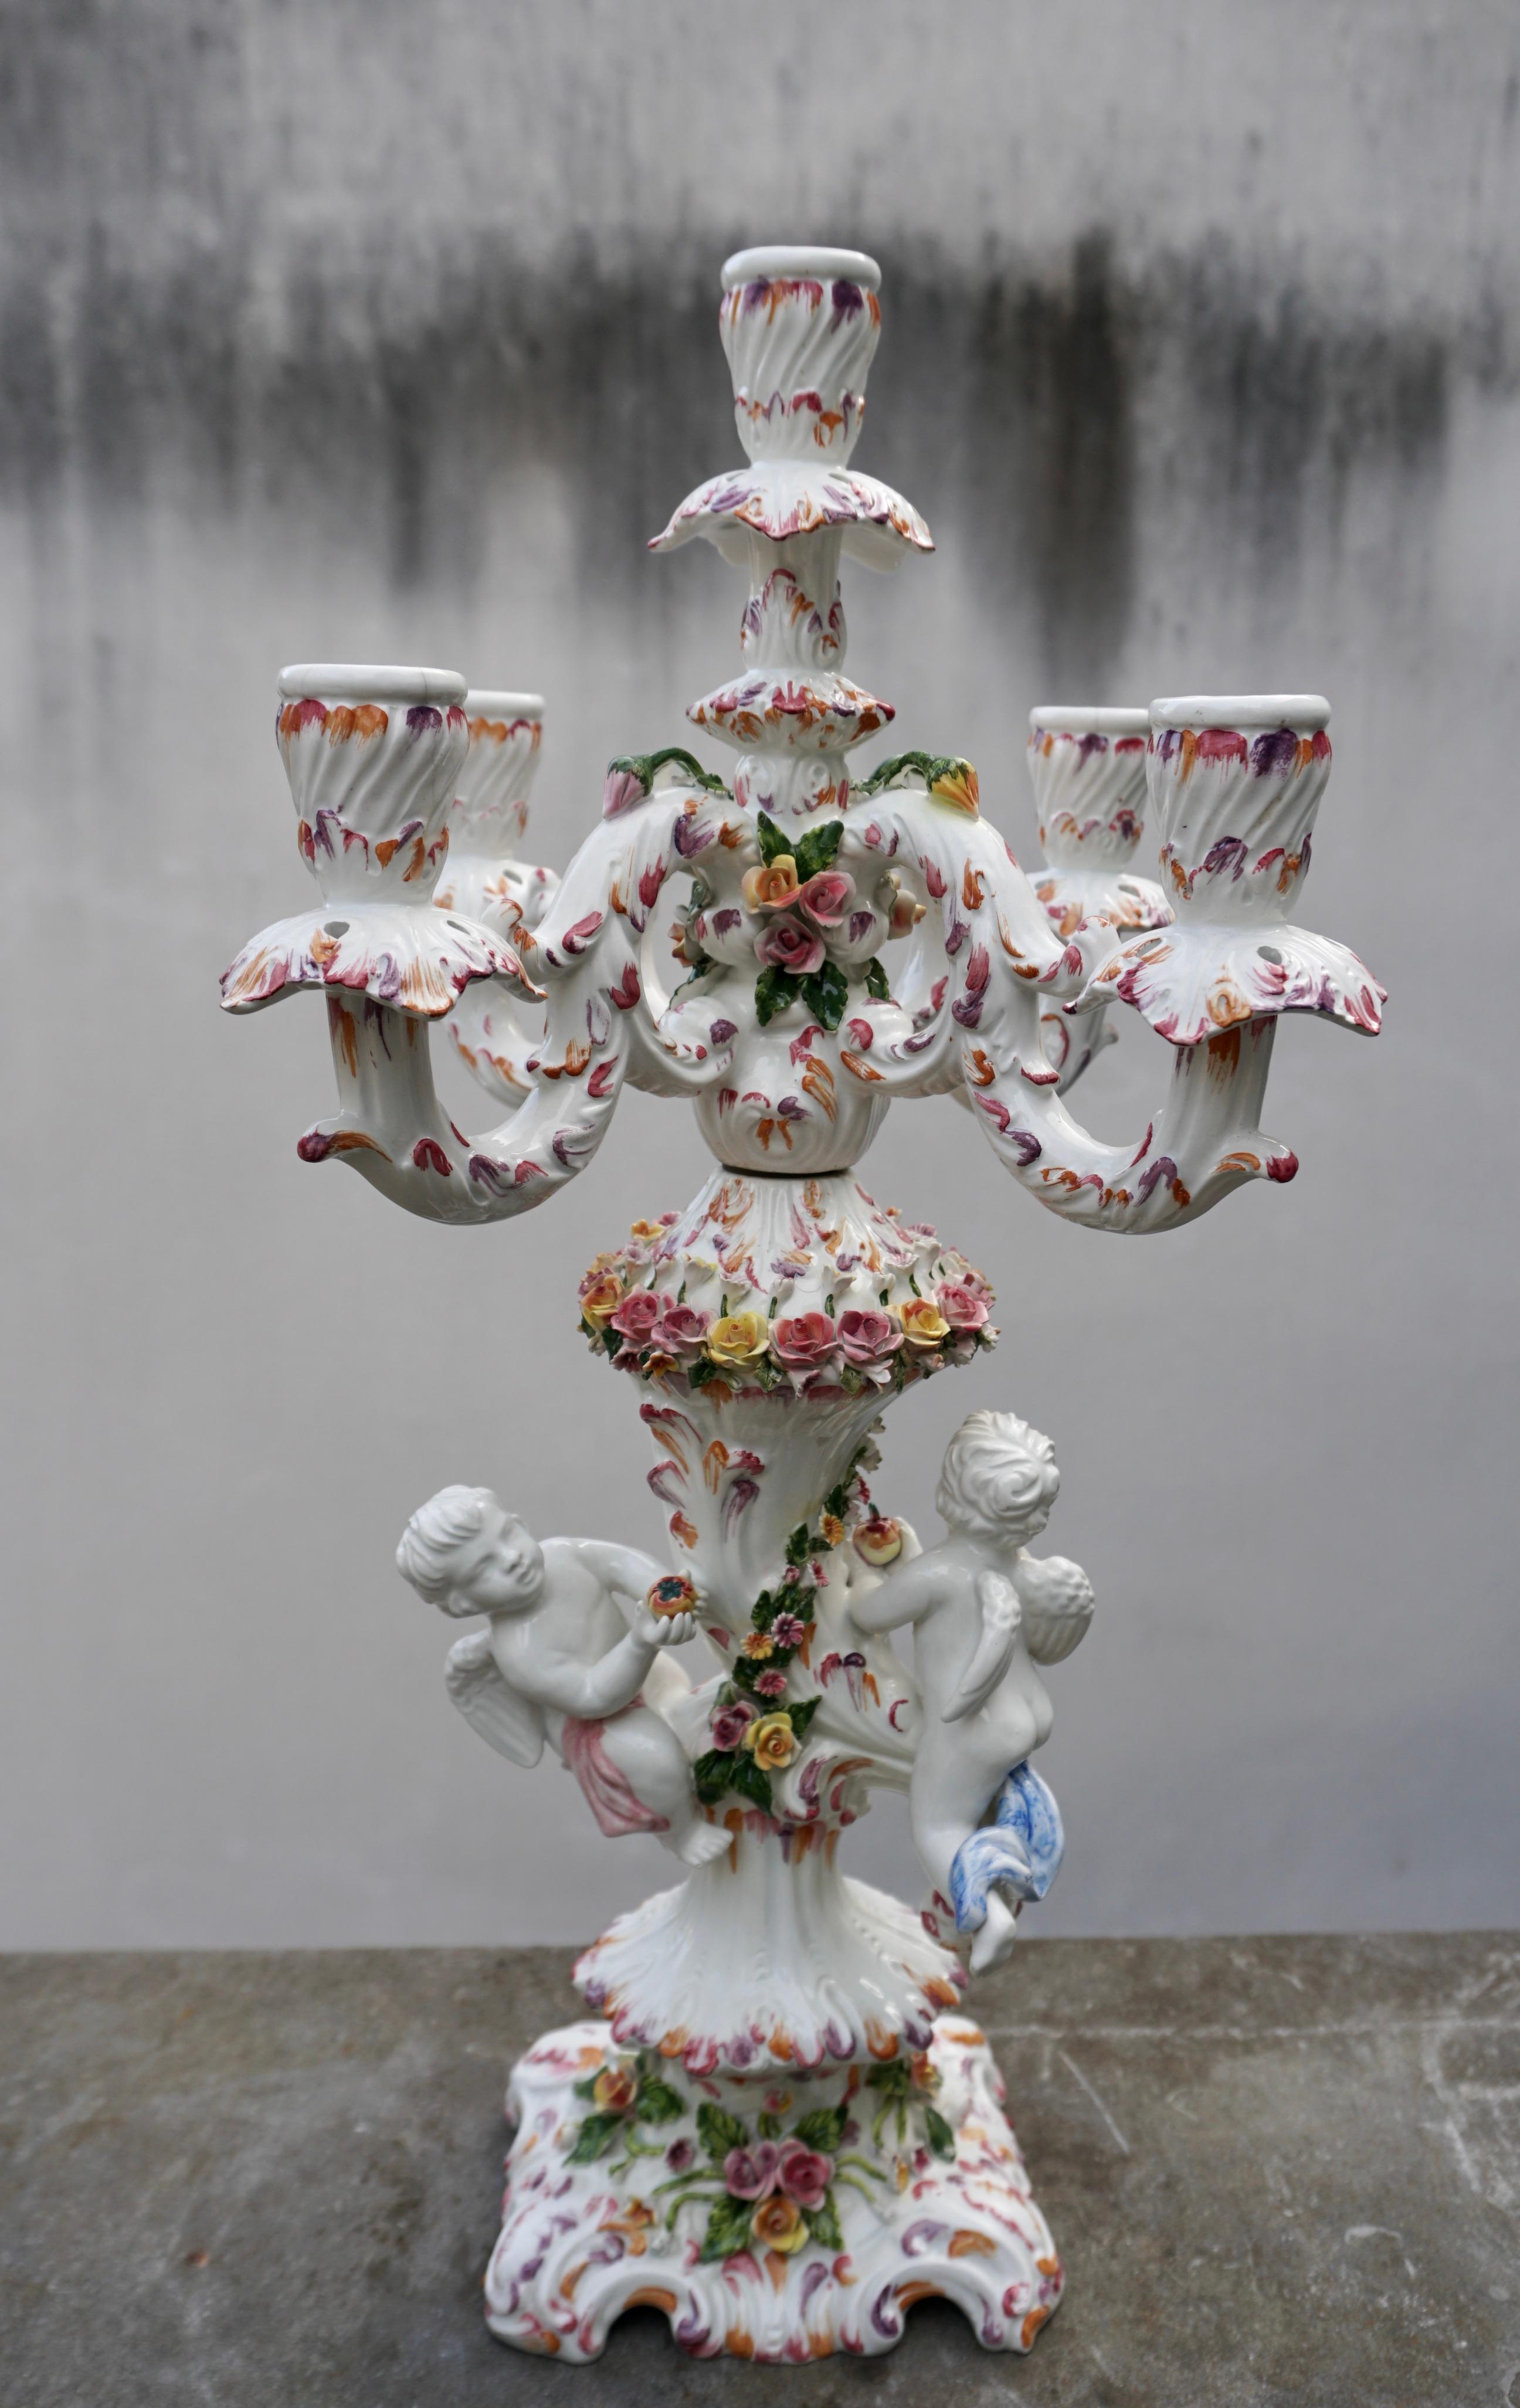 Chandelier en porcelaine de style Capodimonte avec 5 lumières et 2 figures. Très élaboré avec des chérubins et beaucoup de fleurs et de fruits appliqués délicatement.